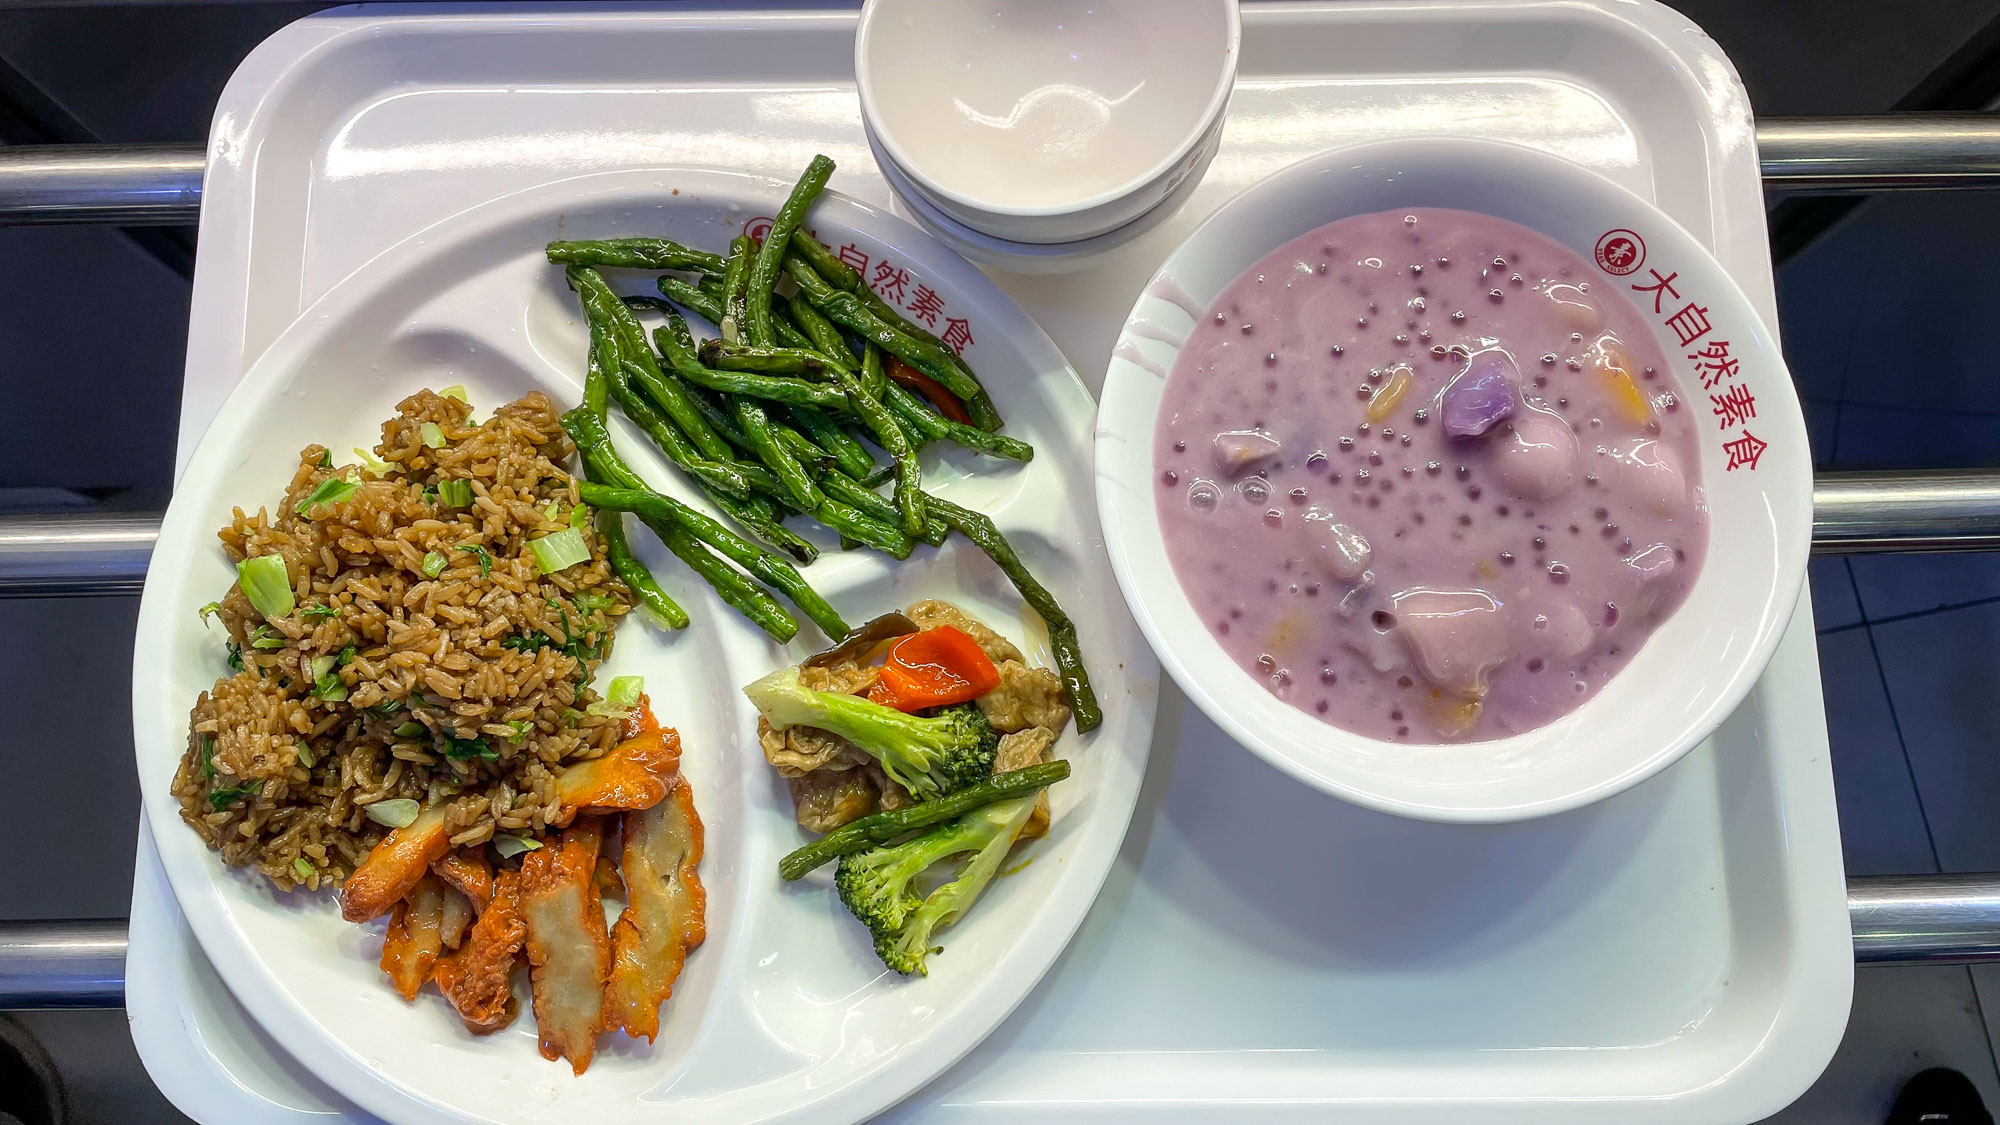 comida vegetariana chinesa, um prato com legumes e arroz e uma tigela com uma sobremesa roxa tipo mingau